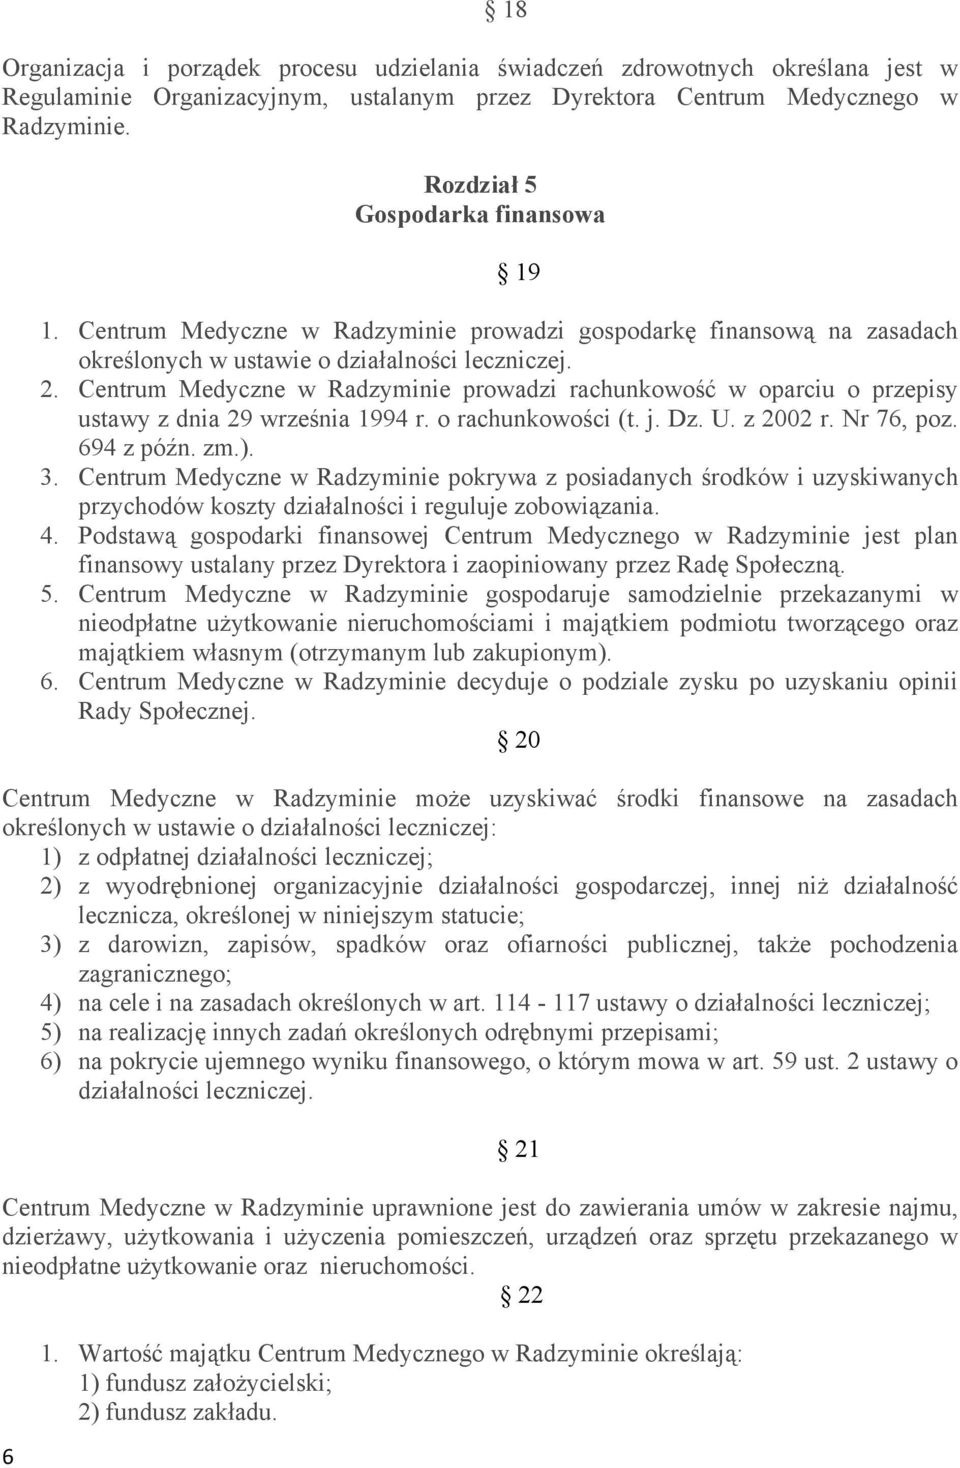 Centrum Medyczne w Radzyminie prowadzi rachunkowość w oparciu o przepisy ustawy z dnia 29 września 1994 r. o rachunkowości (t. j. Dz. U. z 2002 r. Nr 76, poz. 694 z późn. zm.). 3.